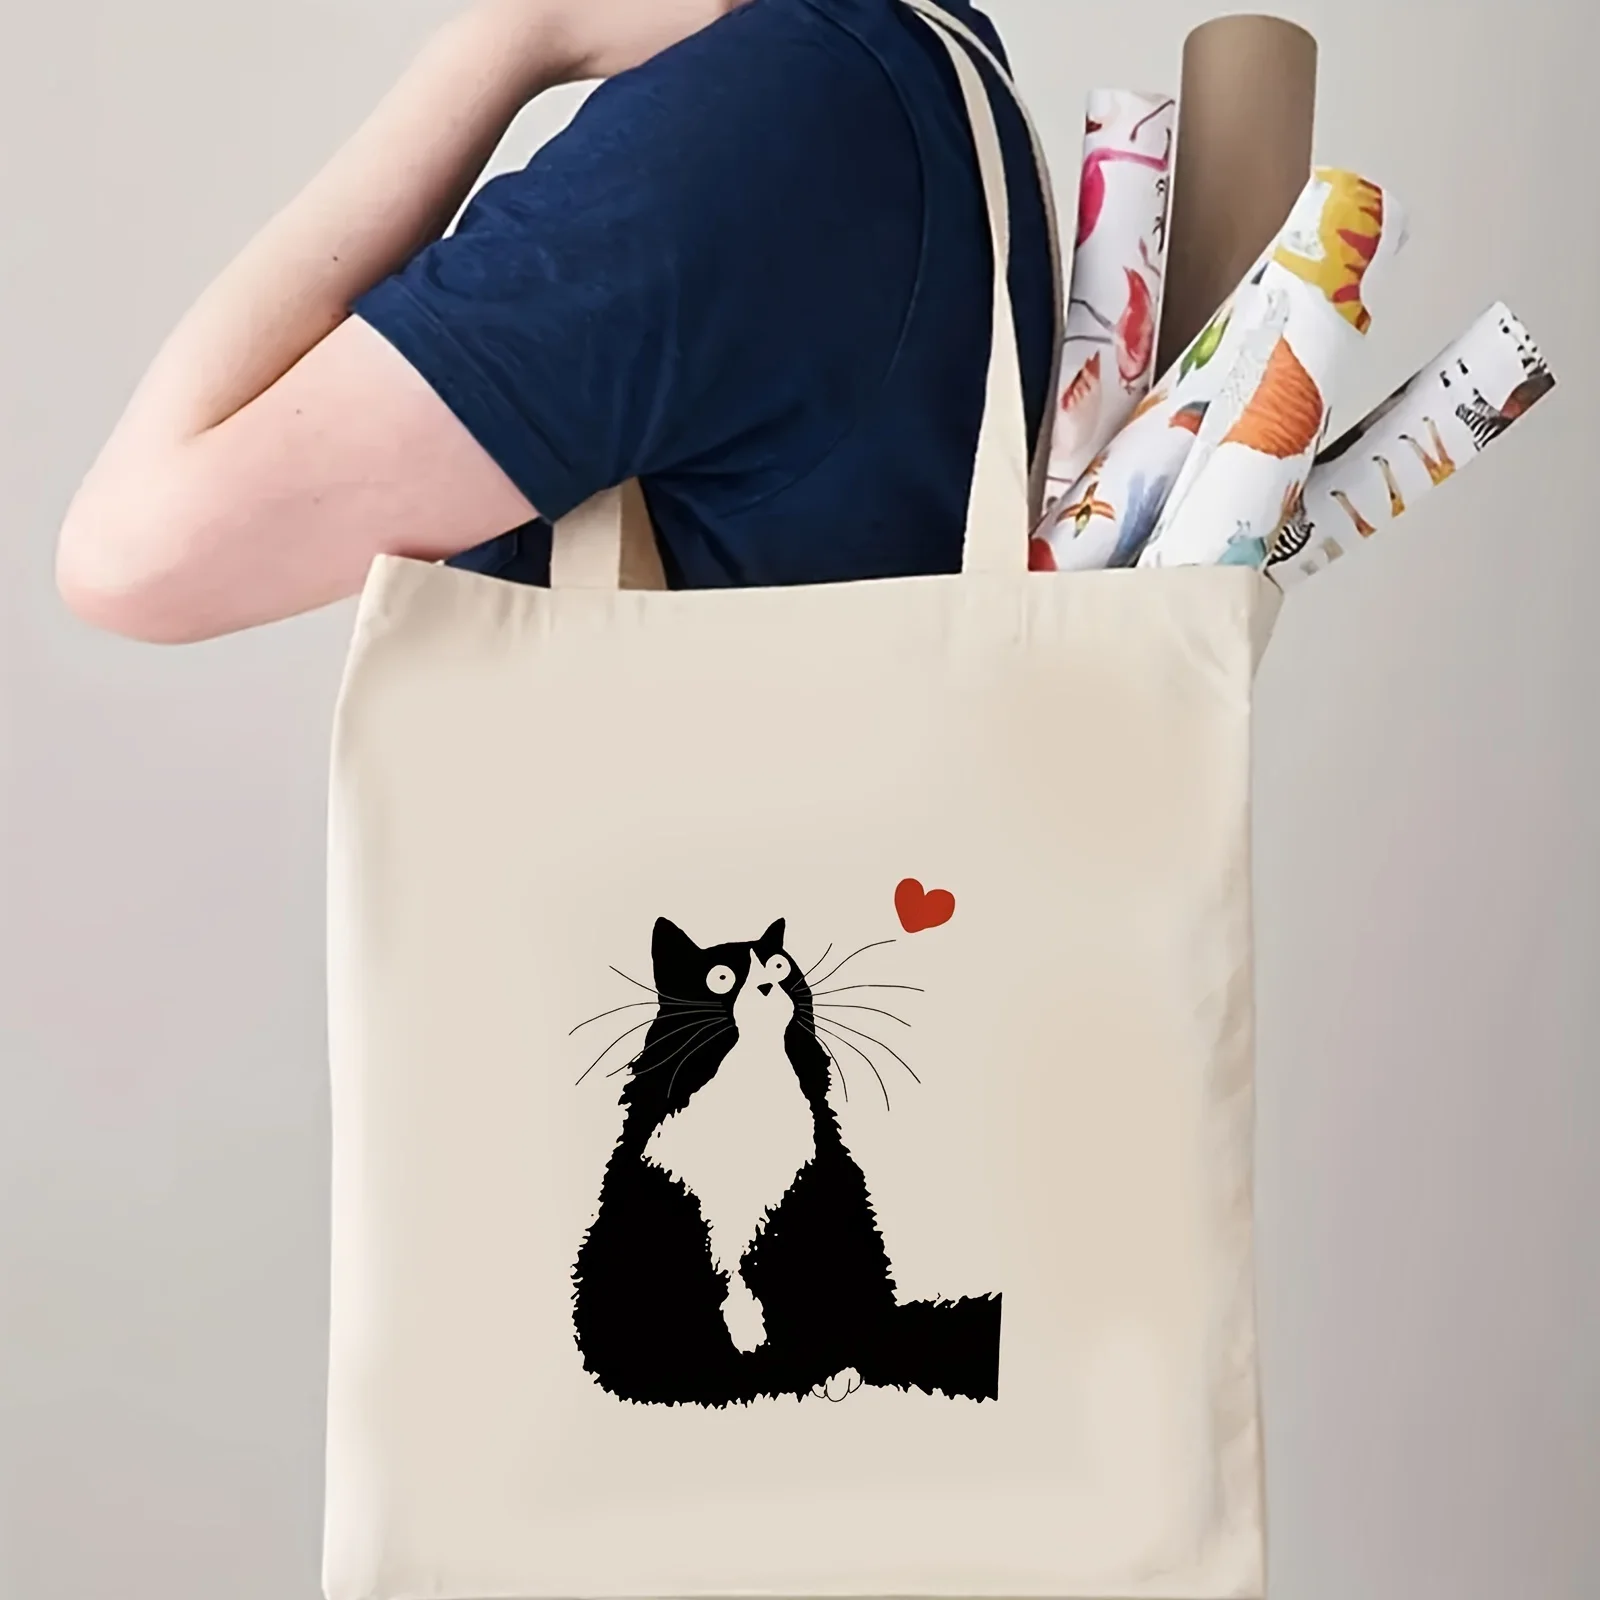 Kawaii Cute Cat Print Tote Bag, Large Capacity Shoulder Bag, Women's Casual Handbag For Work, School, Shopping